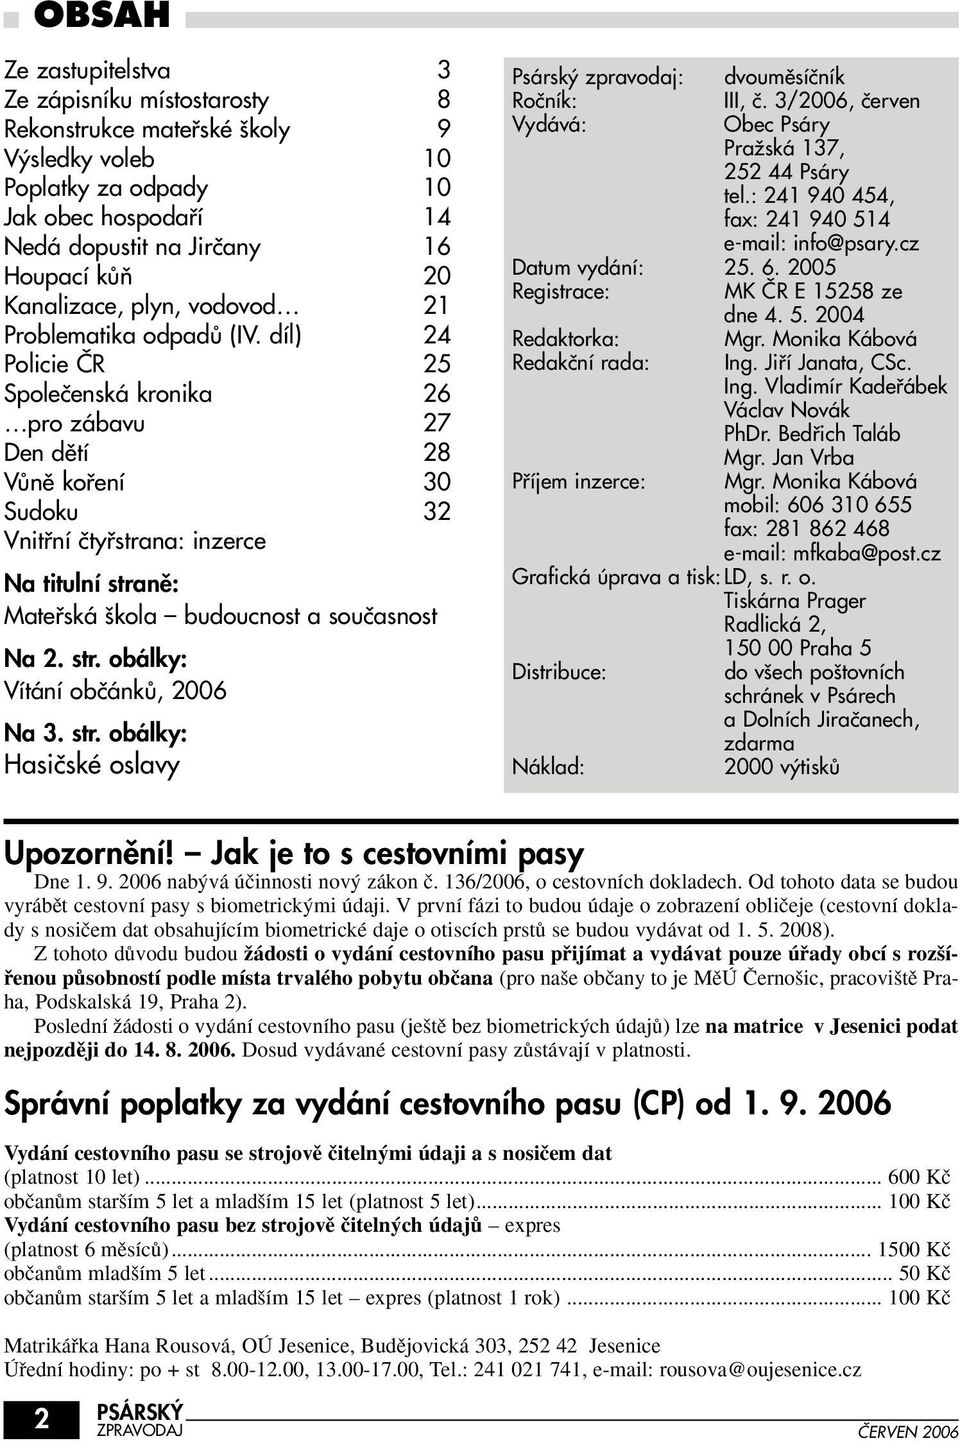 SLOVO ÚVODEM. Prezentace na internetu - PDF Stažení zdarma